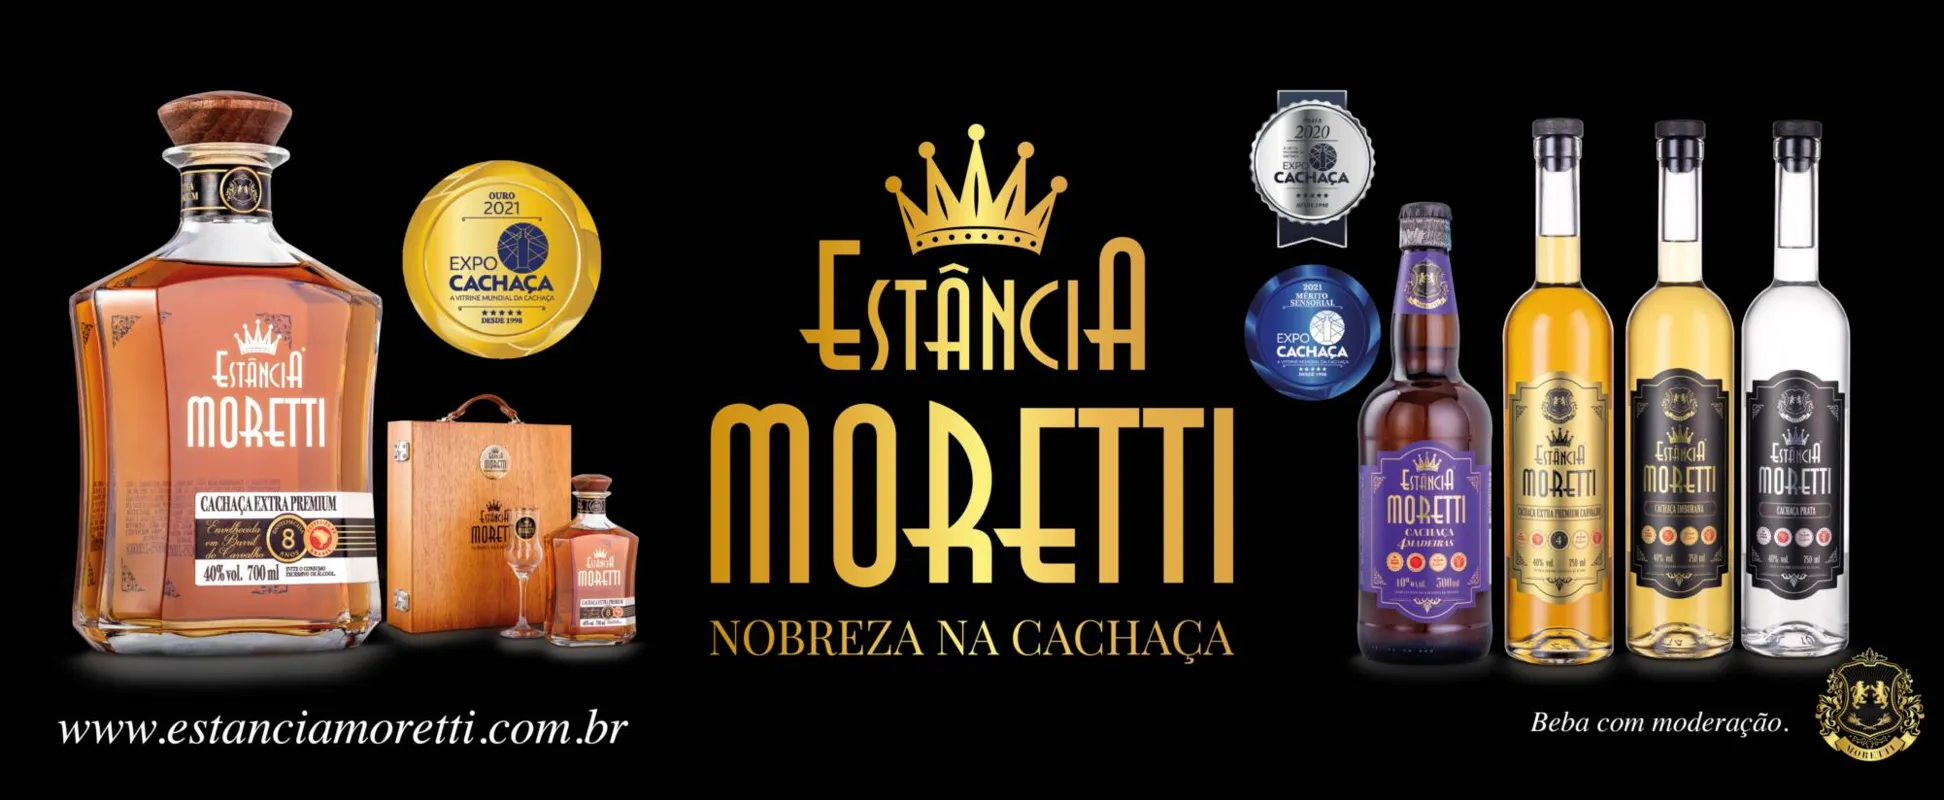 A Cachaça Estância Moretti já ganhou vários prêmios nacionais e agora vai competir internacionalmente